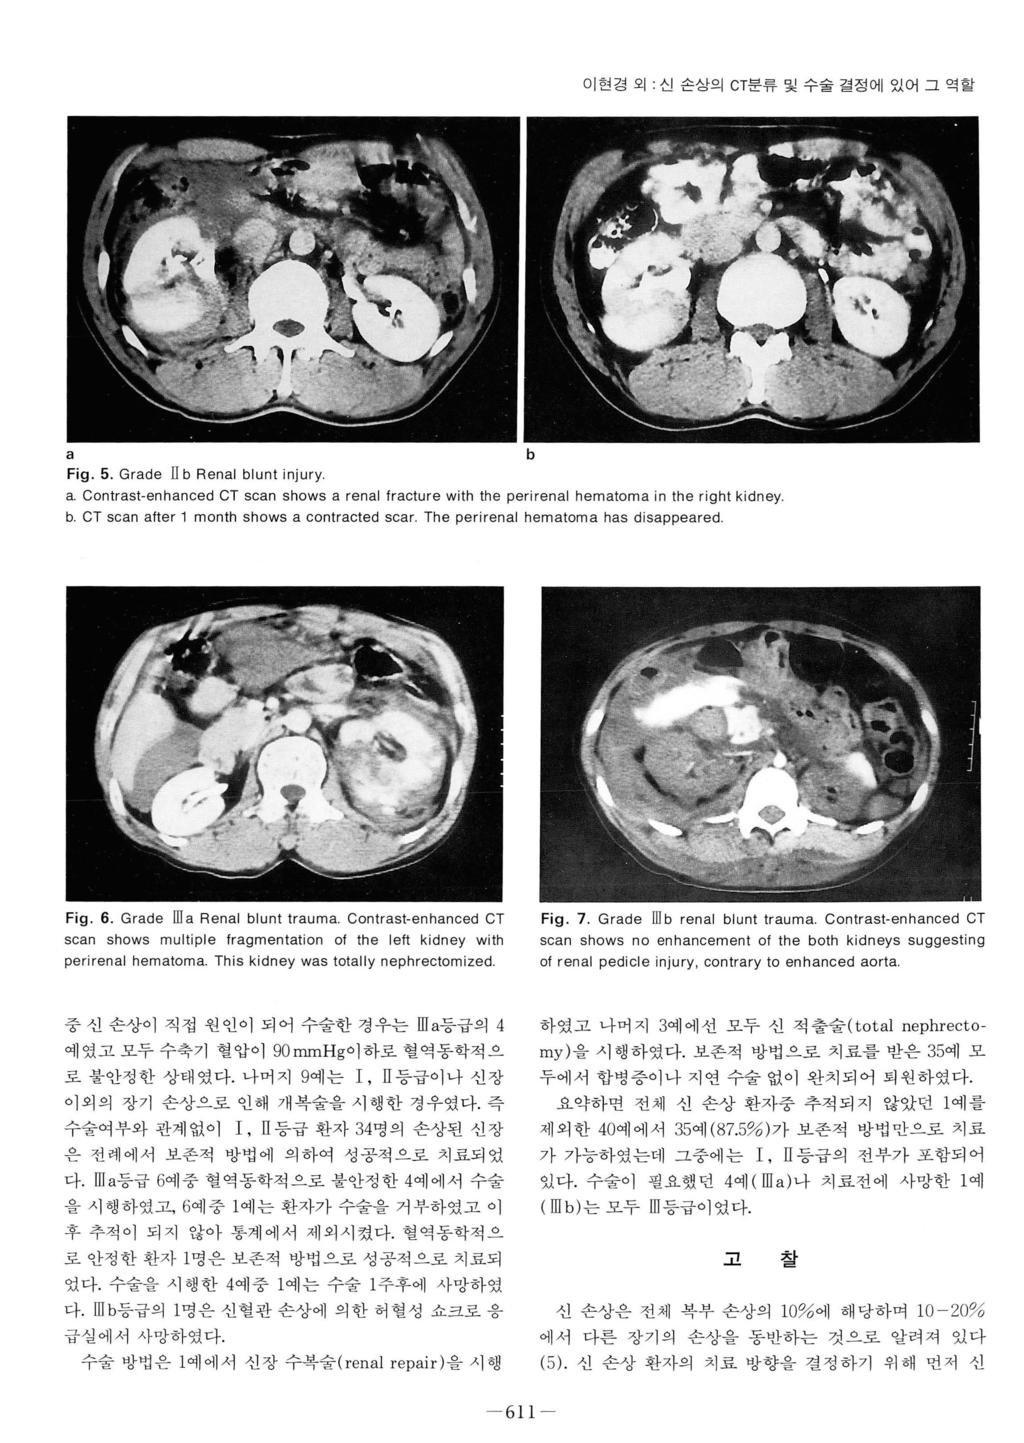 이현경외 : 신손상으 I CT분류및수술결정에있어그역할 a Fig. 5. Grade II b Renal blunt injury a. Contrast-enhanced CT scan shows a renal Iracture with the perirenal hematoma in the right kidney b.